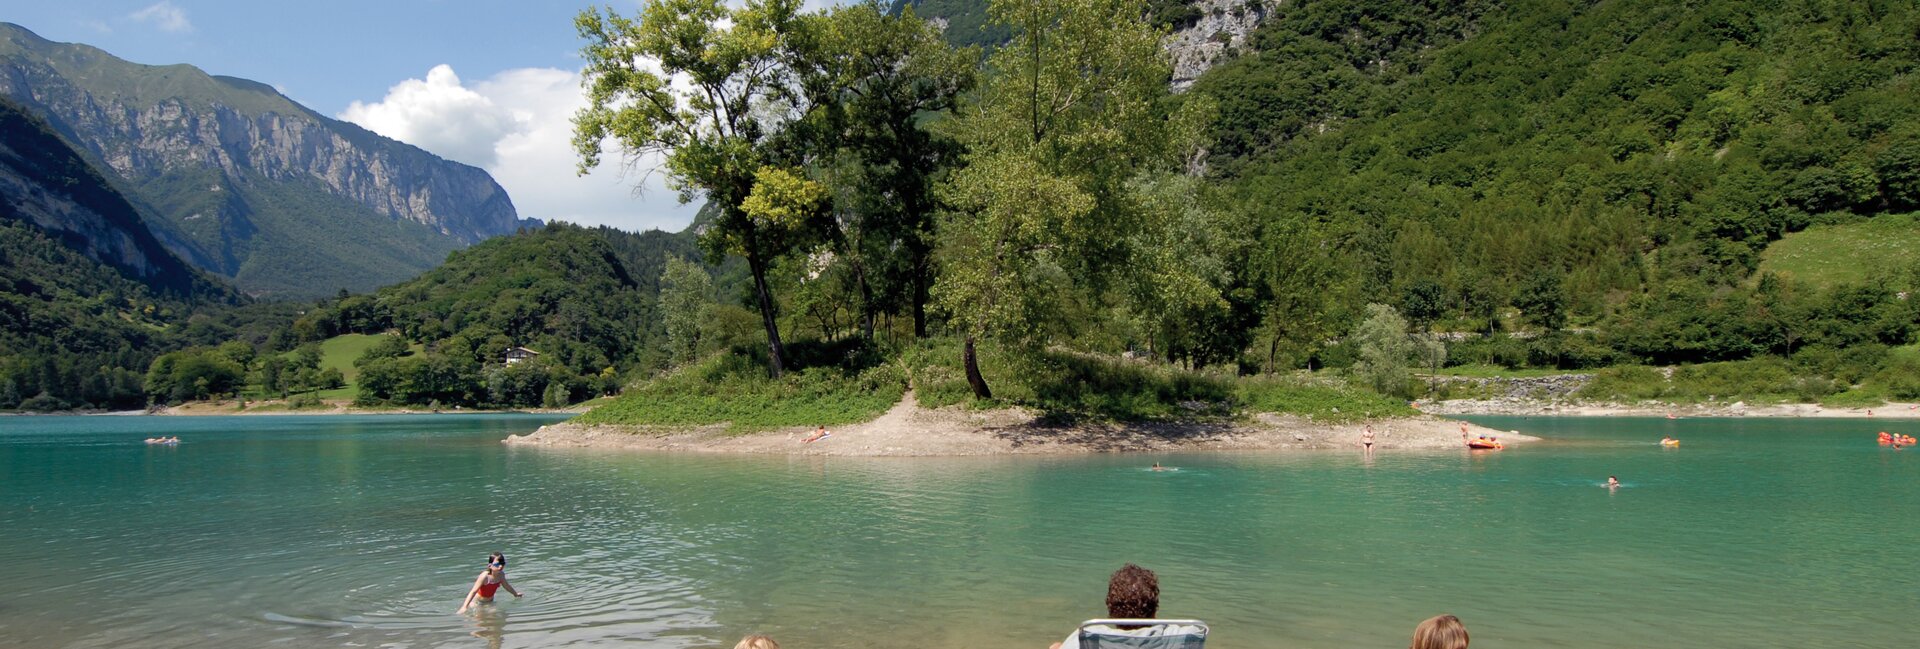 Lake Tenno Italy, swimming